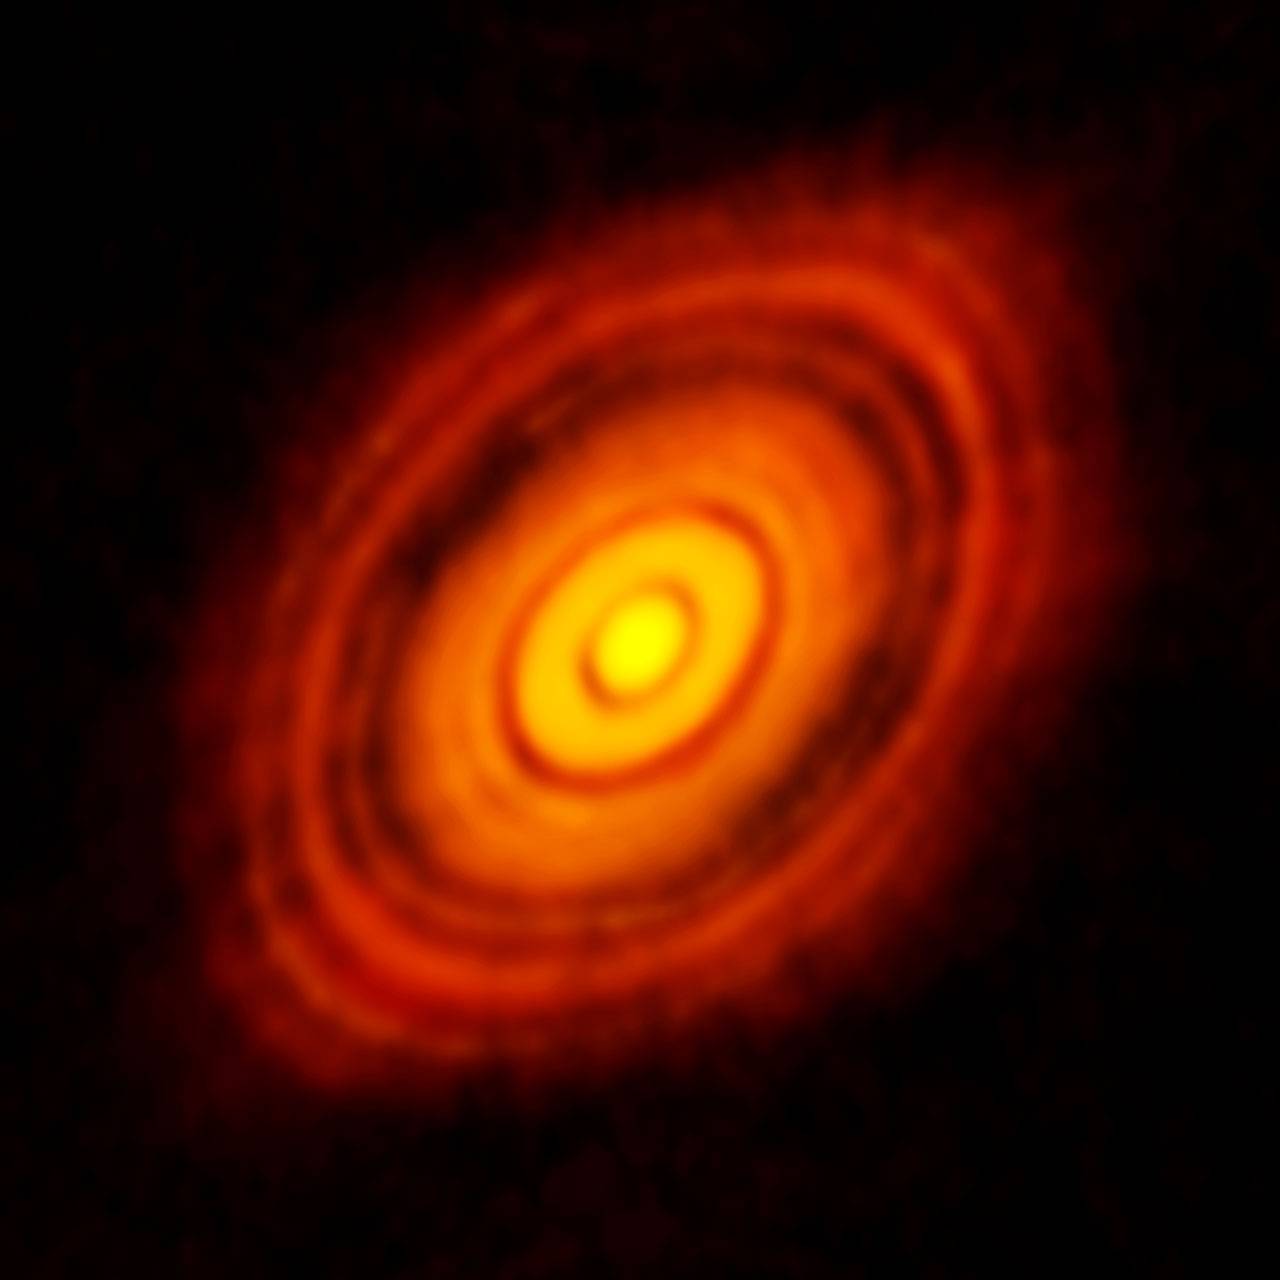 Disco protoplanetario que rodea a la joven estrella HL Tauri. / ESO